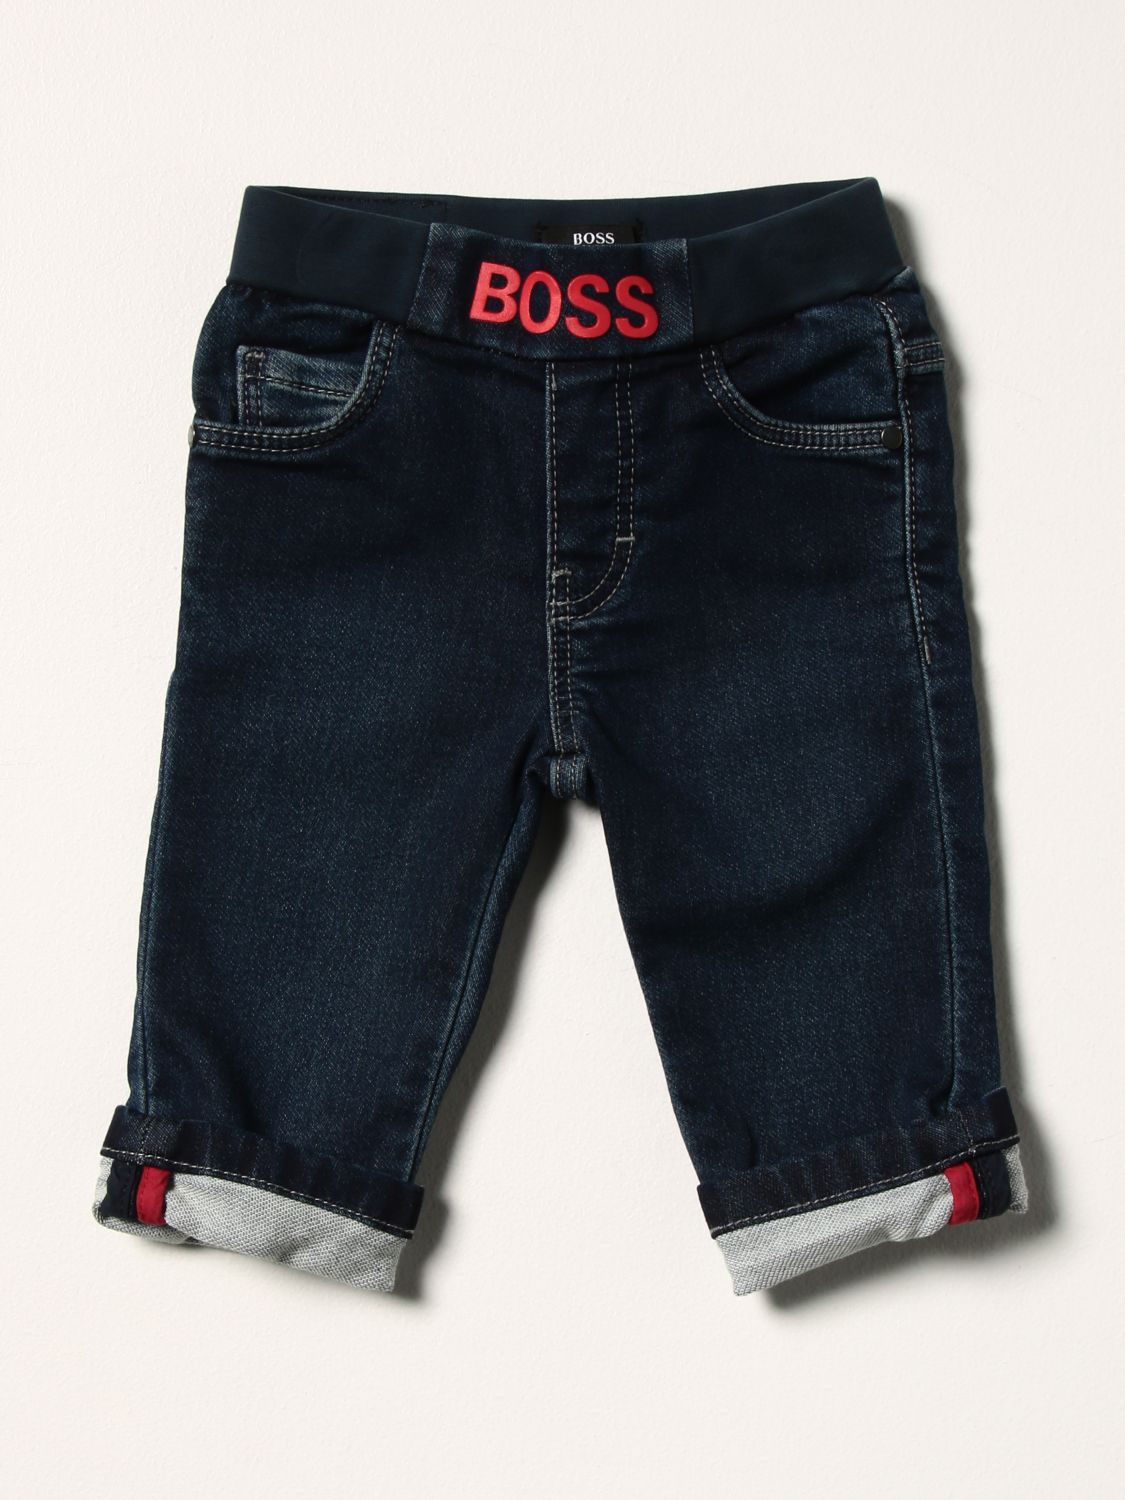 klep in de rij gaan staan chef HUGO BOSS: 5-pocket jeans | Jeans Hugo Boss Kids Denim | Jeans Hugo Boss  J04416 GIGLIO.COM